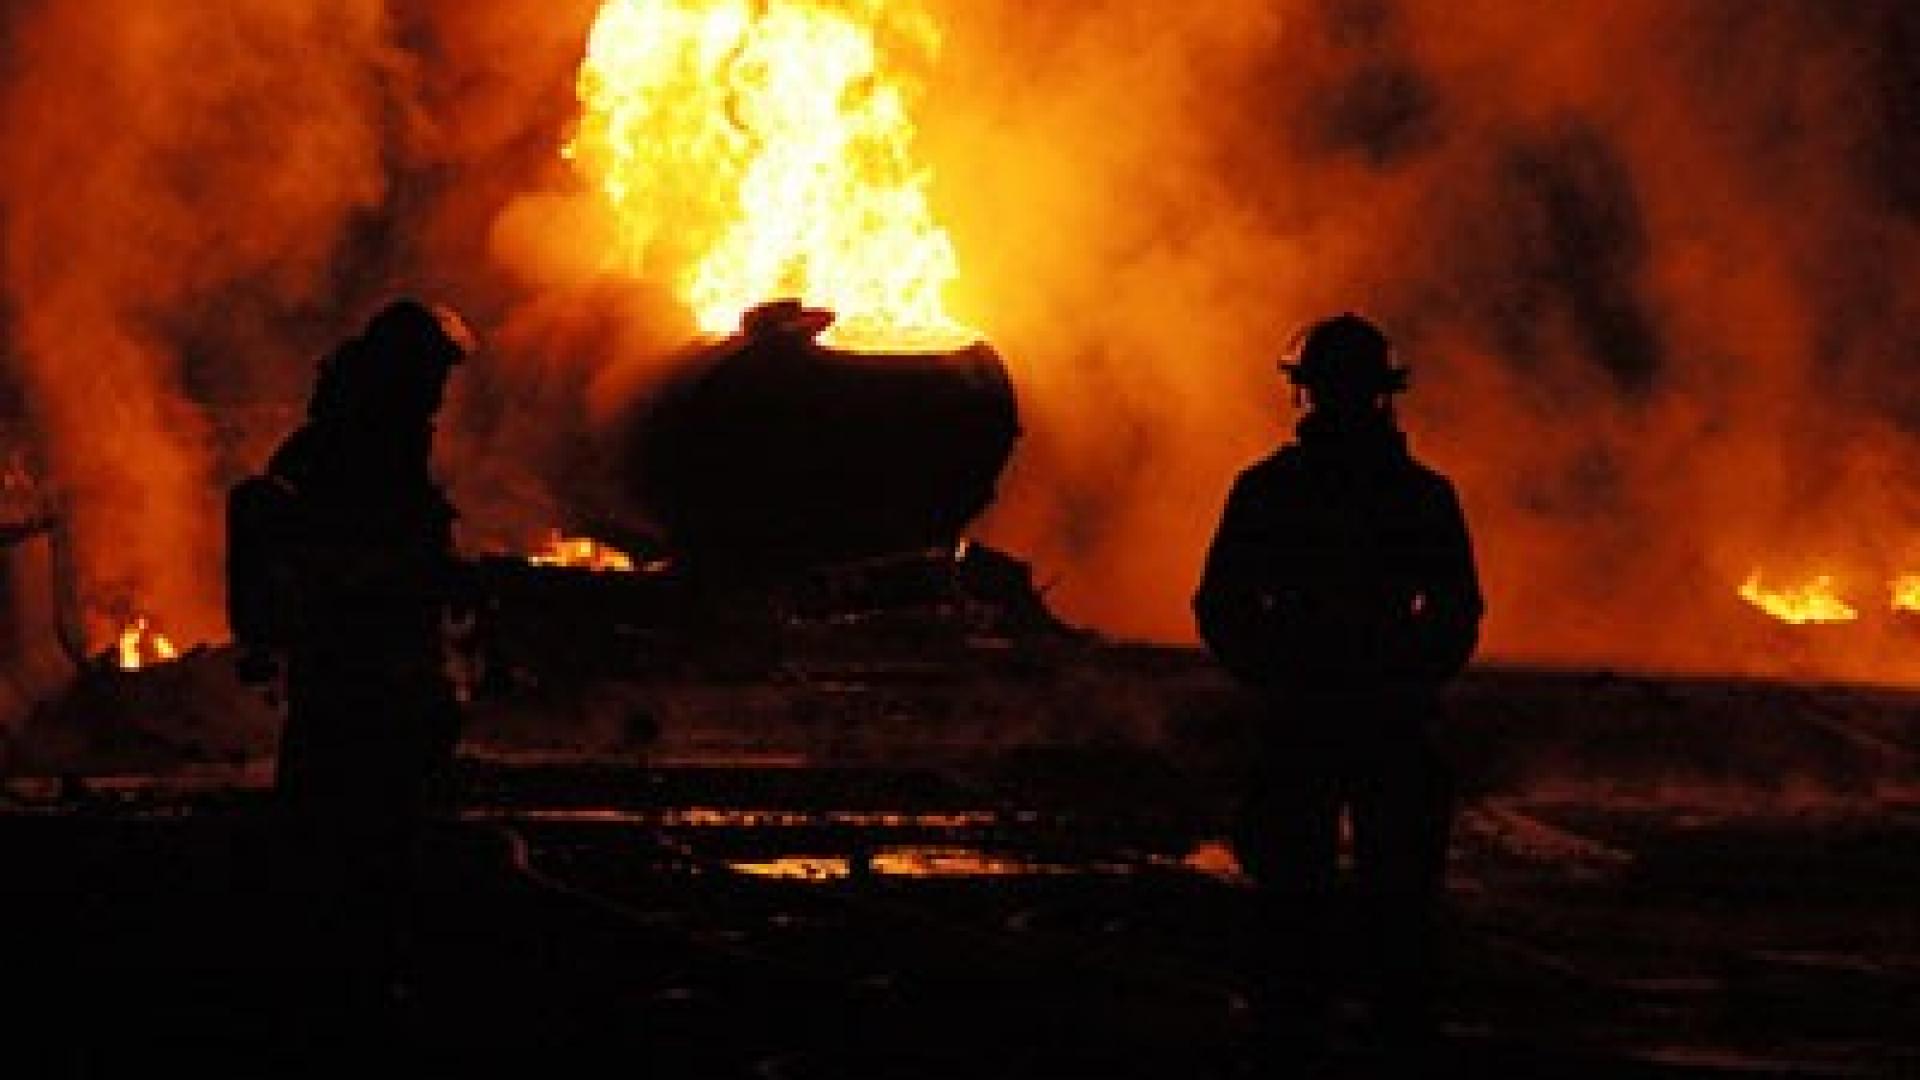 Ein brennendes Objekt vor dem zwei Feuerwehrleute stehen.